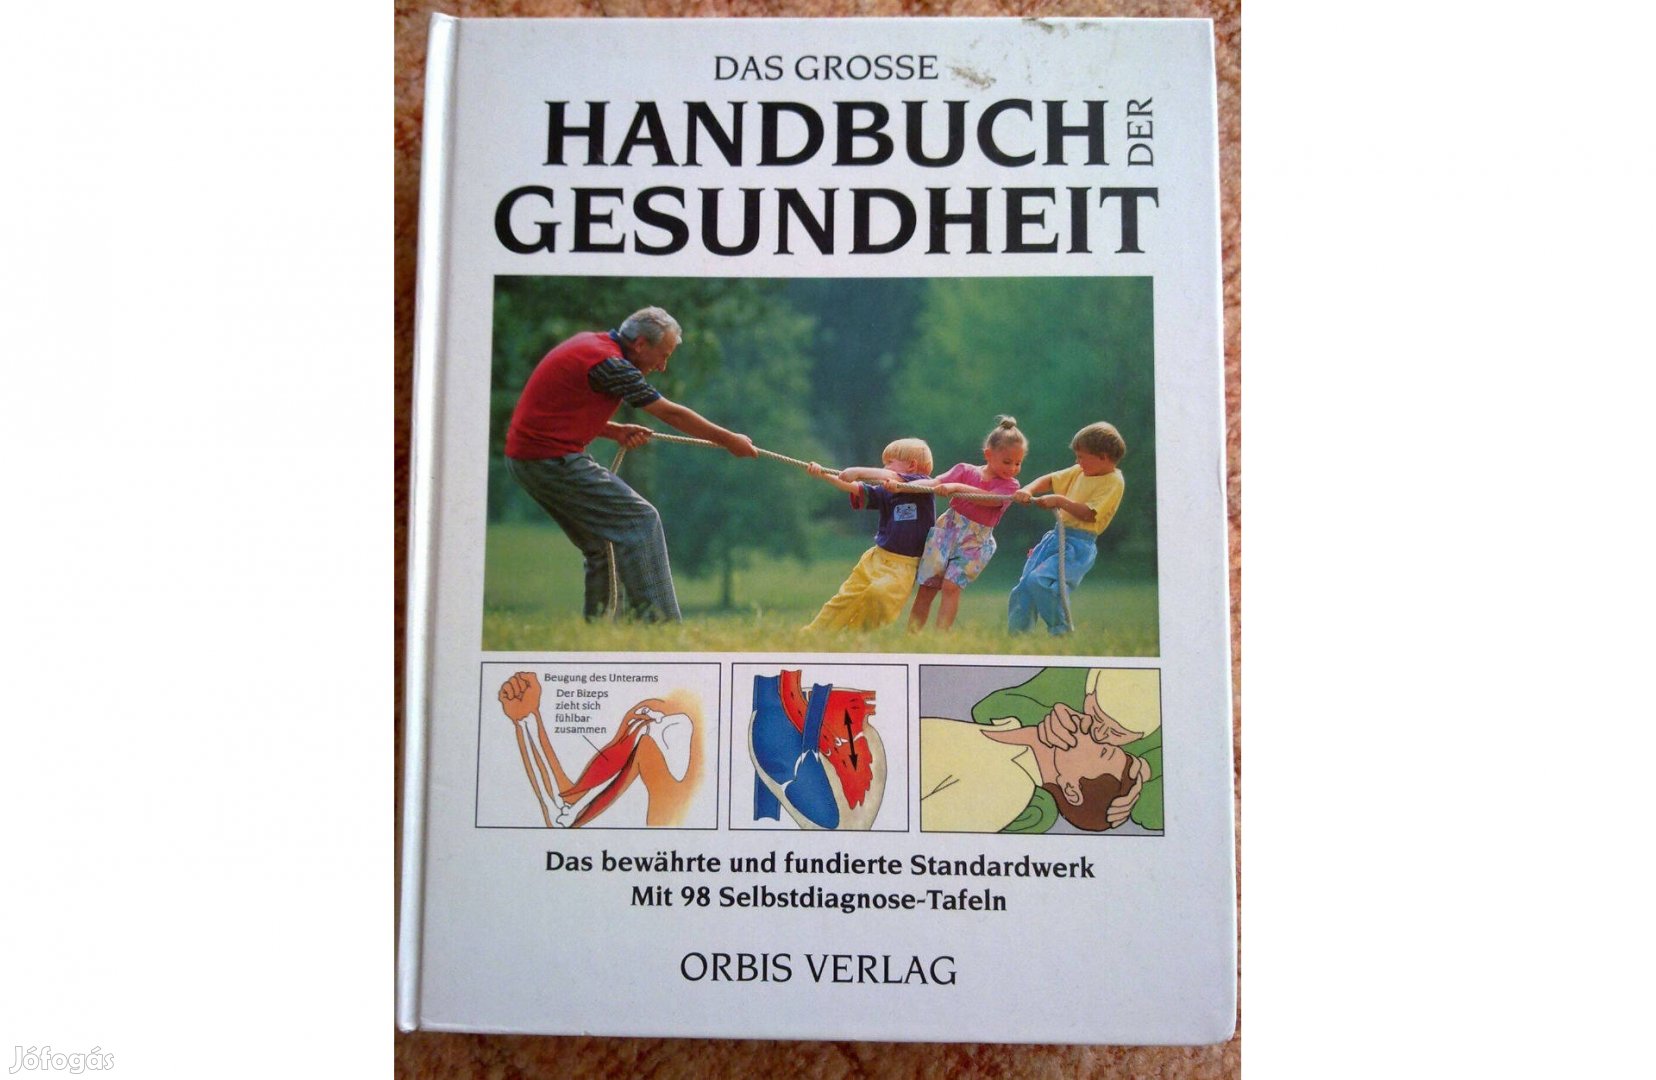 Das Grosse Handbuch der Gesundheit - német nyelvő egészségügyi lexikon